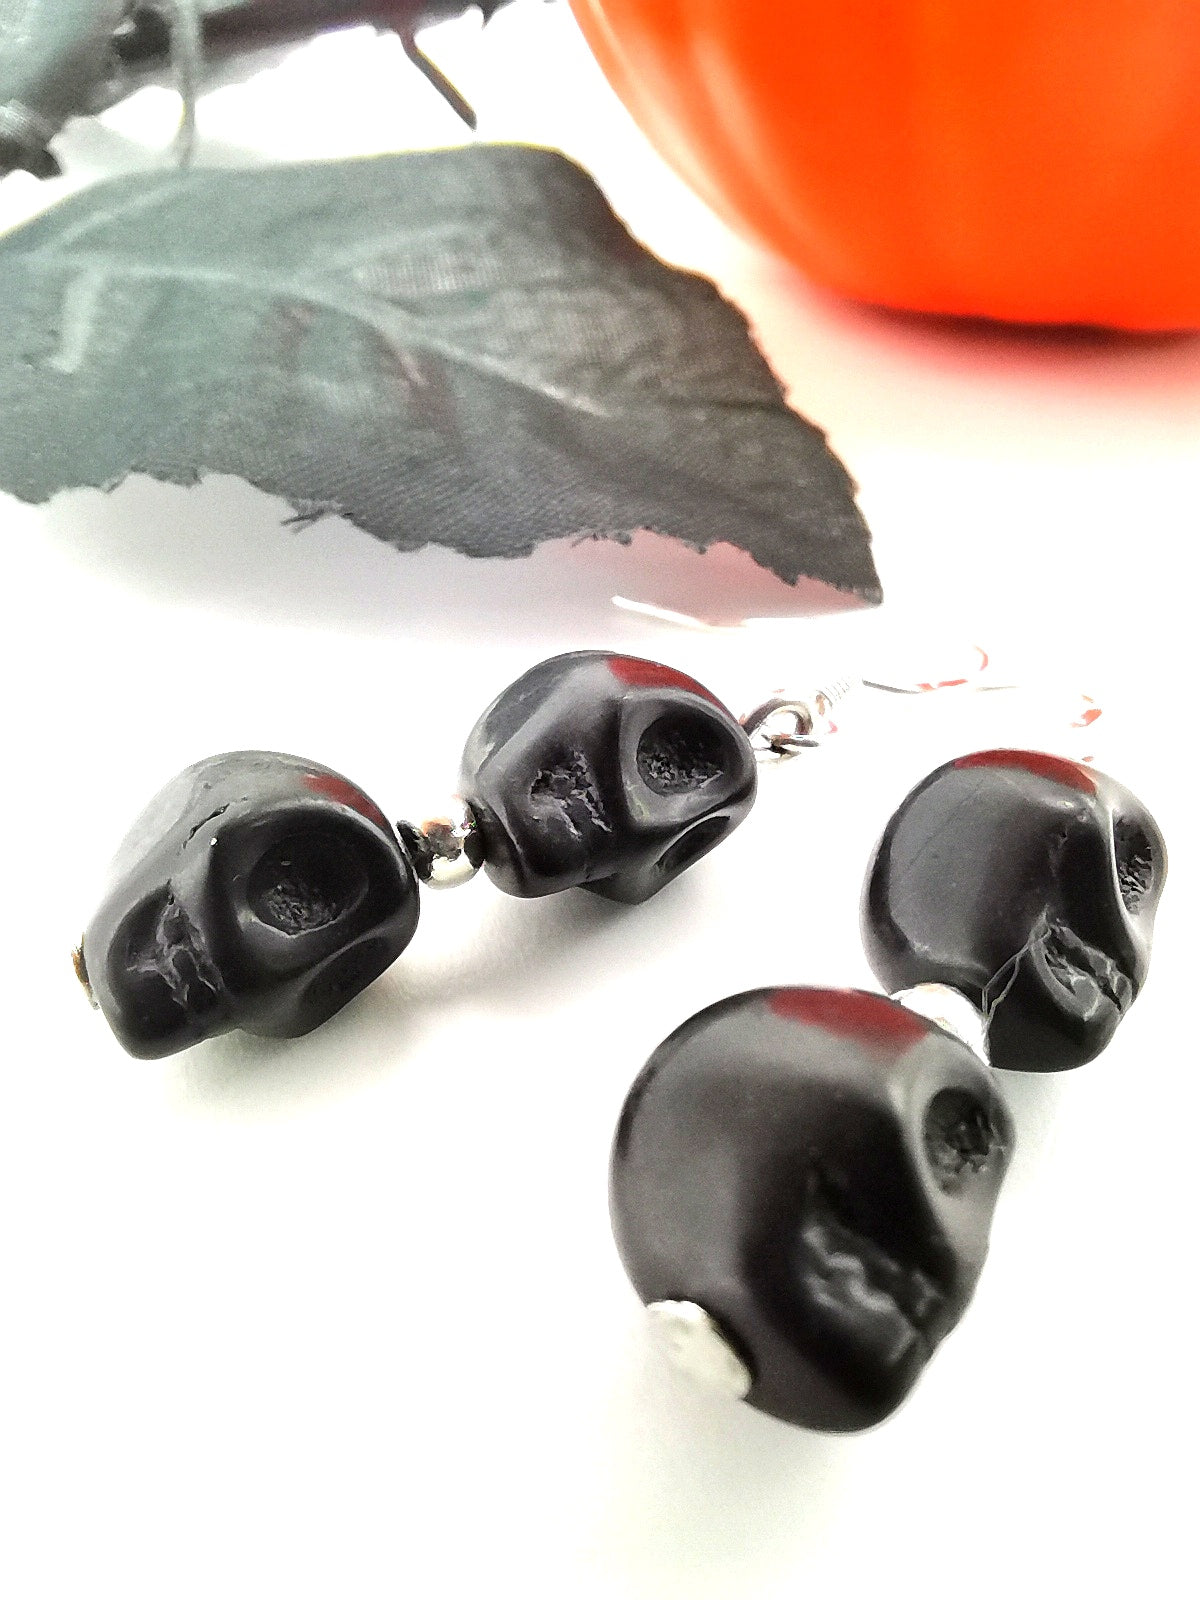 Bone-chilling Skull Earrings - Silver Sunbird Halloween Earrings